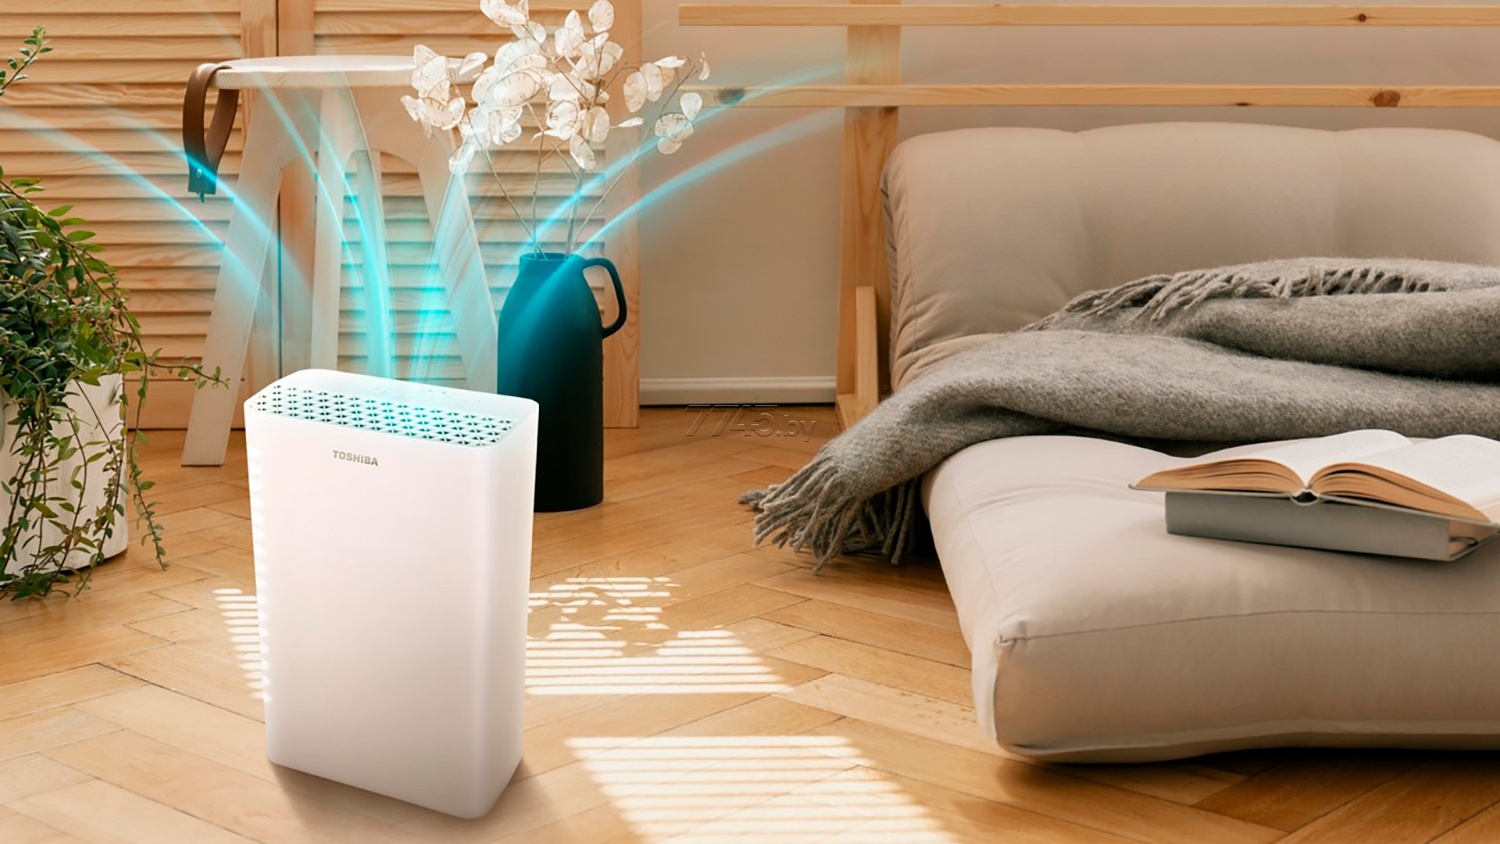 Какой воздухоочиститель лучше выбрать для дома или квартиры: фотокаталитический, с нера-фильтром, с ионизатором или другой